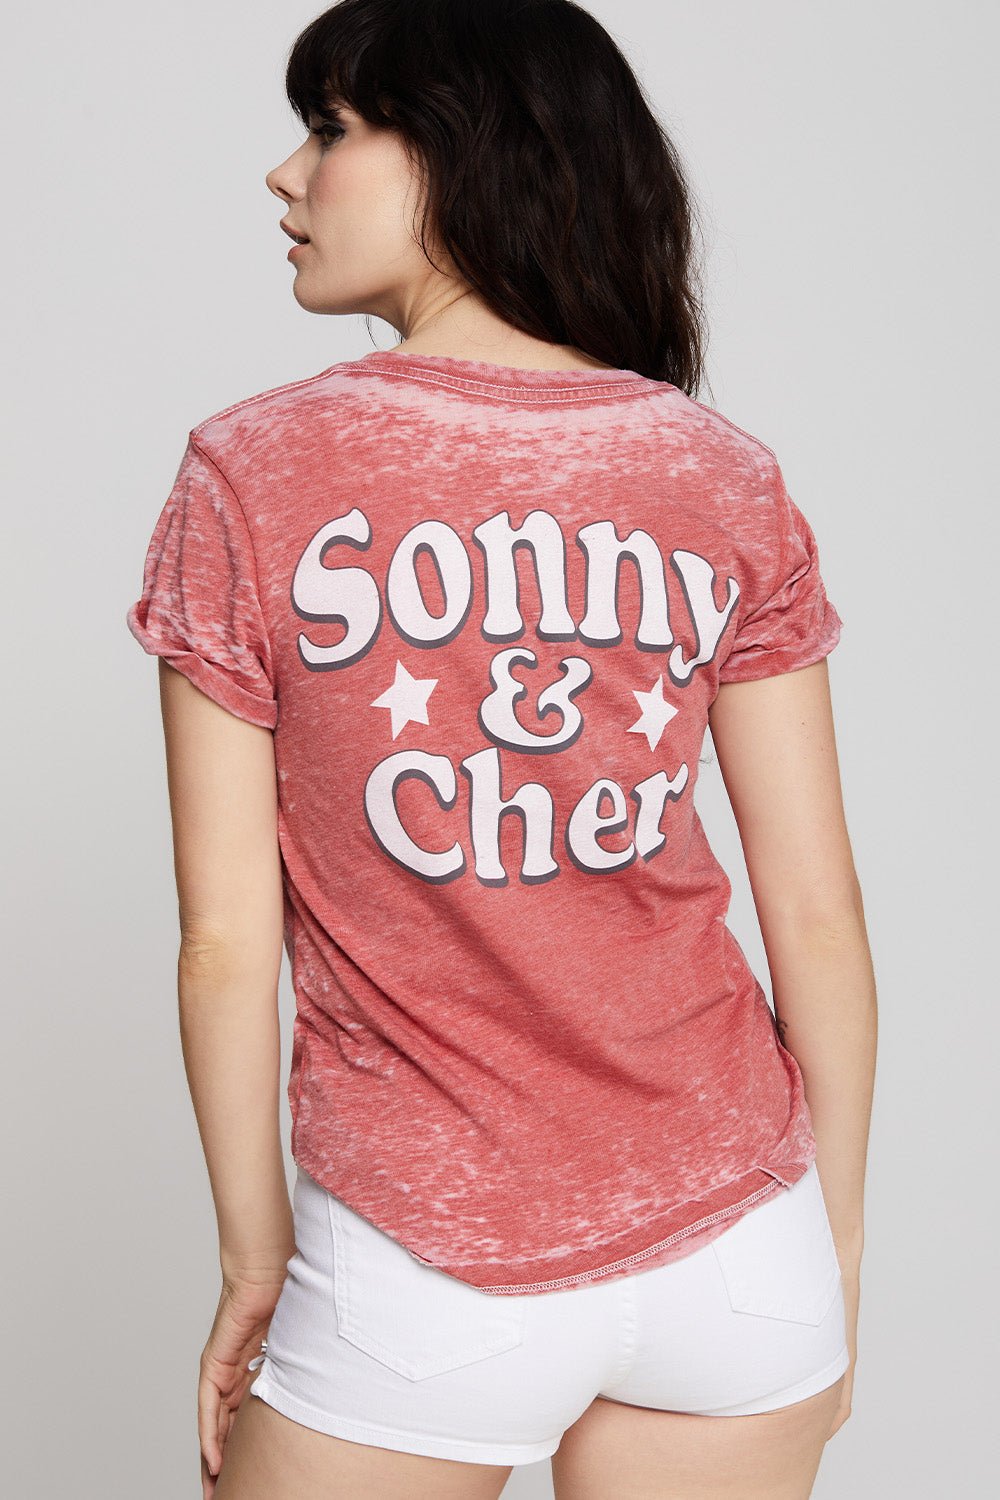 Sonny & Cher - Chili Pepper - Blue Sky Clothing & Lingerie